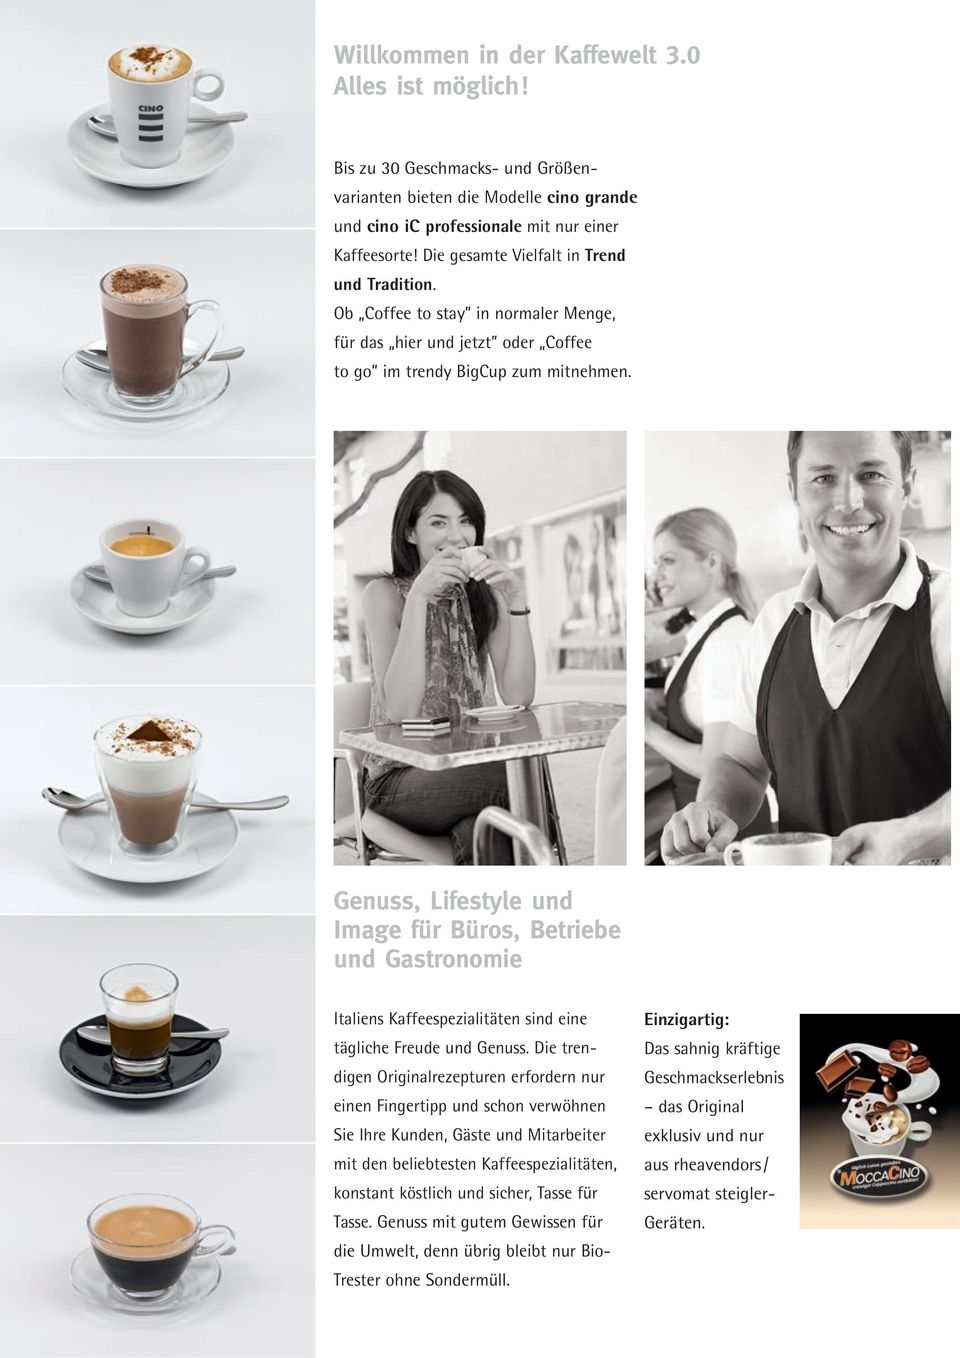 Genuss, Lifestyle und Image für Büros, Betriebe und Gastronomie Italiens Kaffeespezialitäten sind eine tägliche Freude und Genuss.